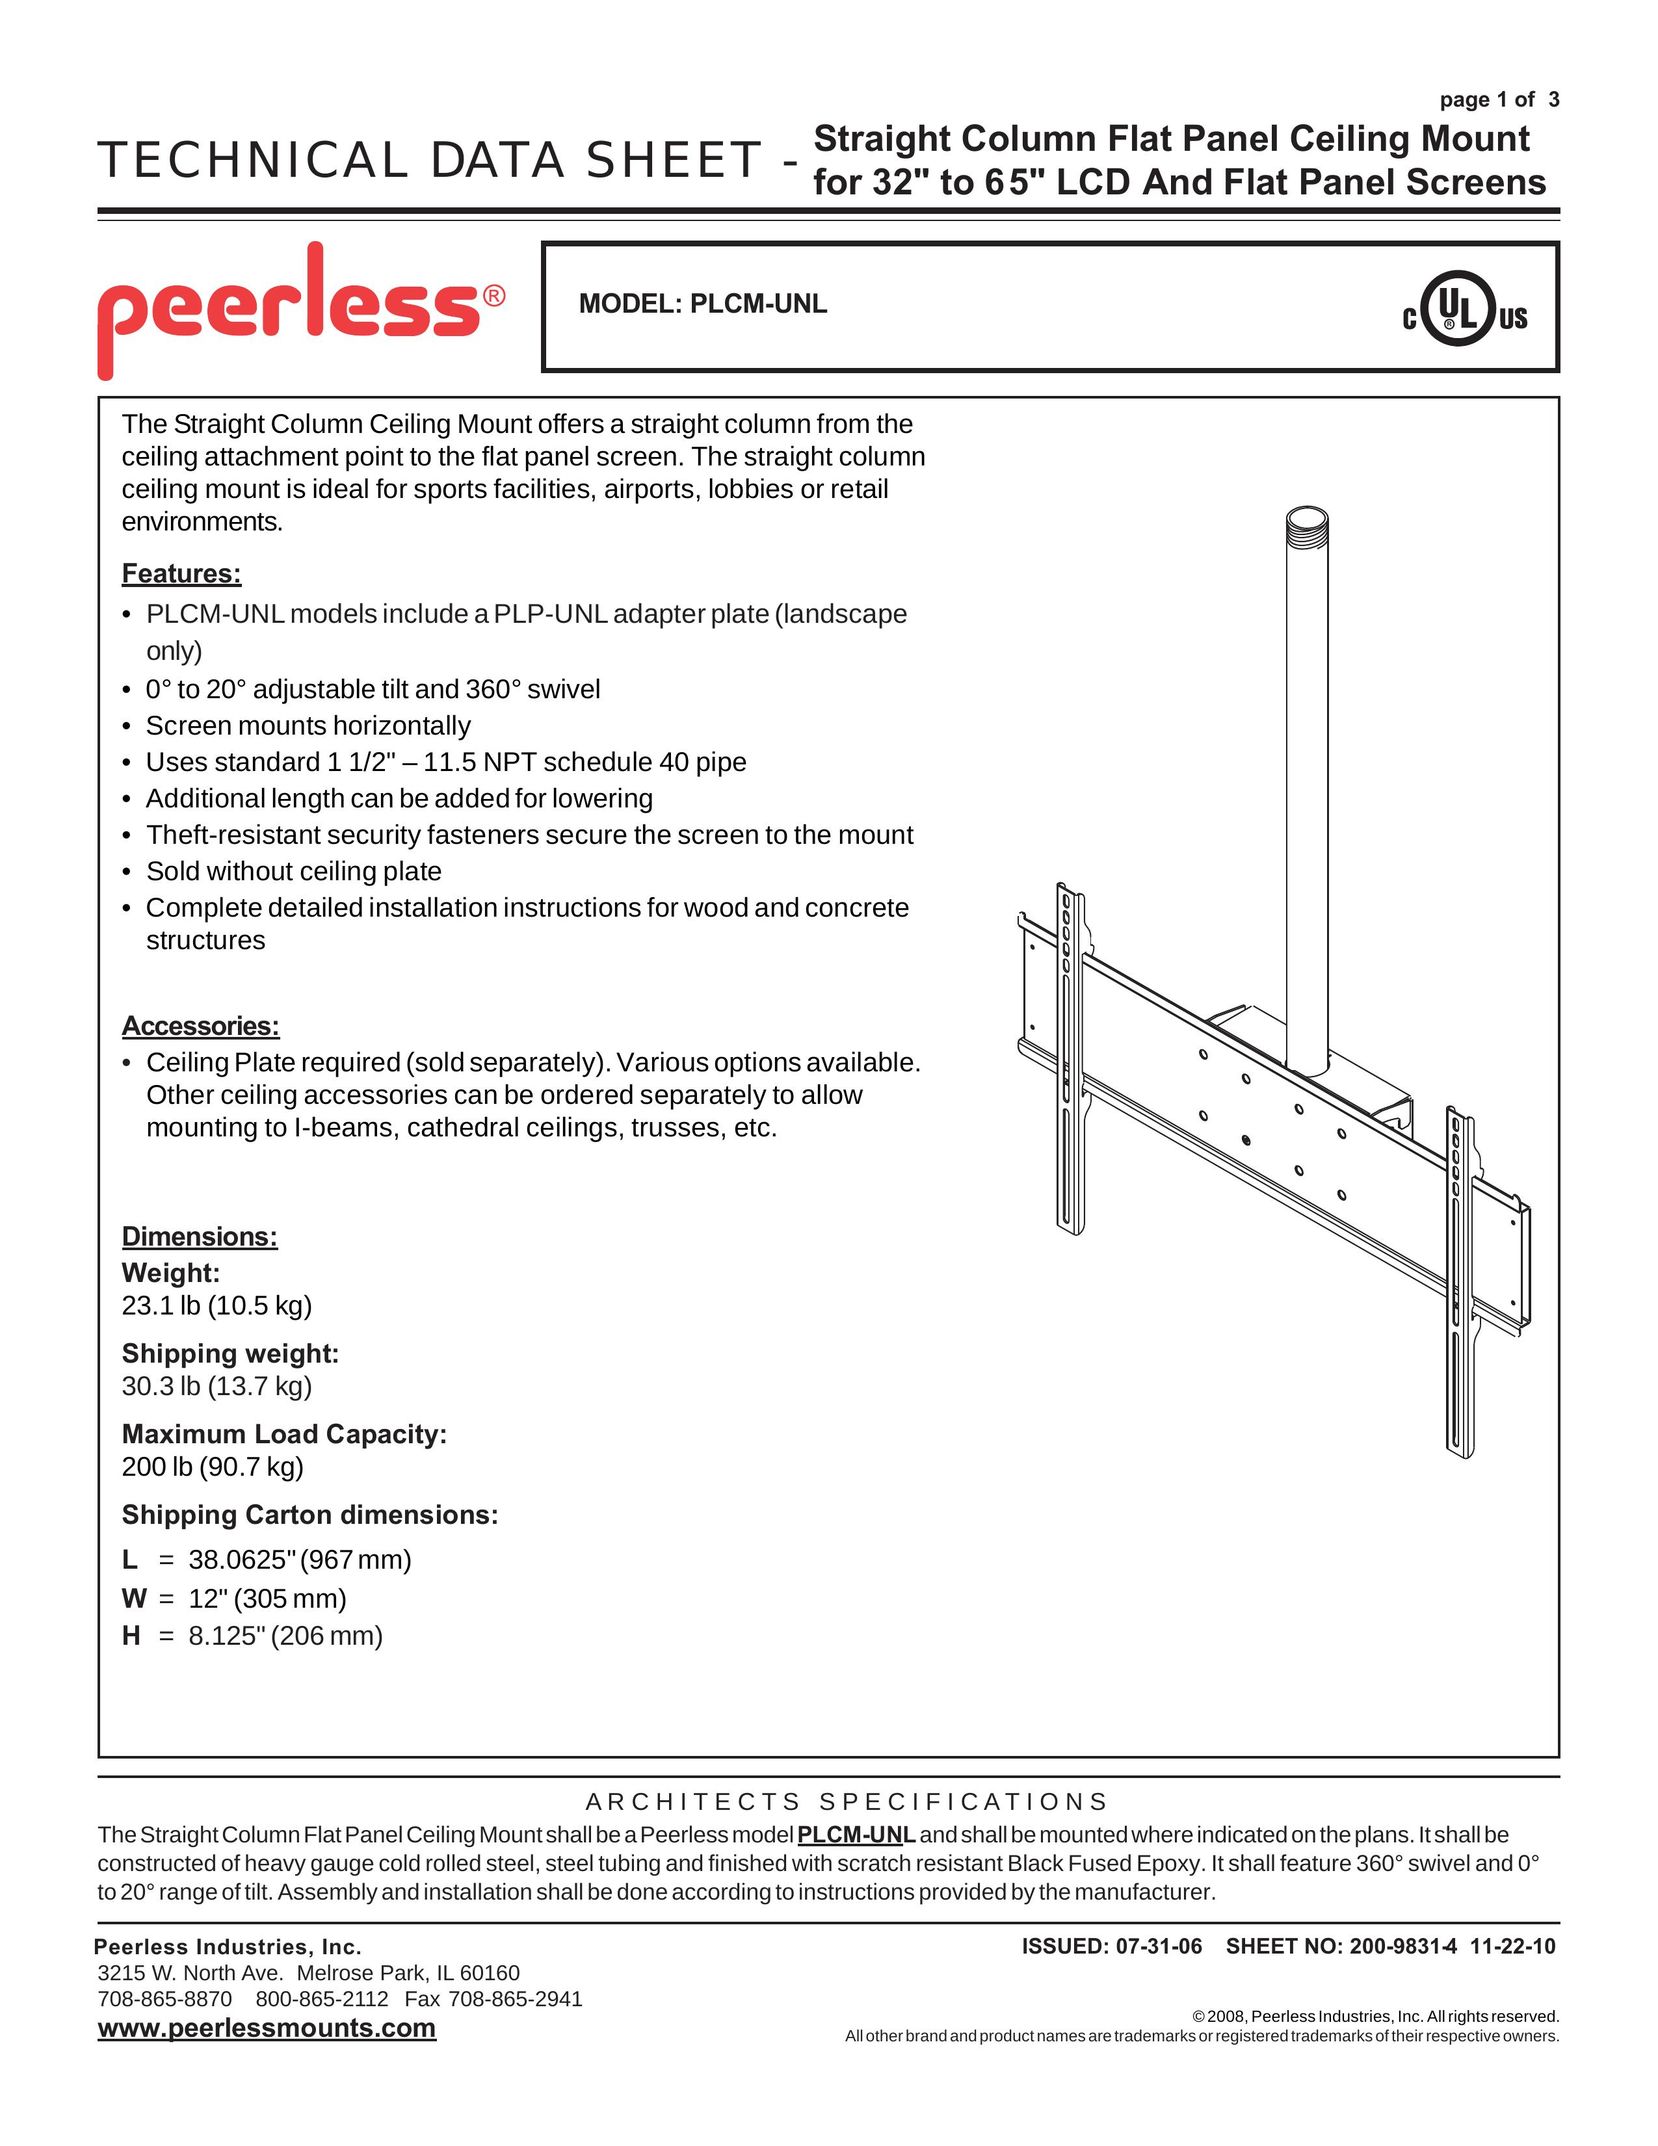 Peerless Industries PLCM-UNL Flat Panel Television User Manual